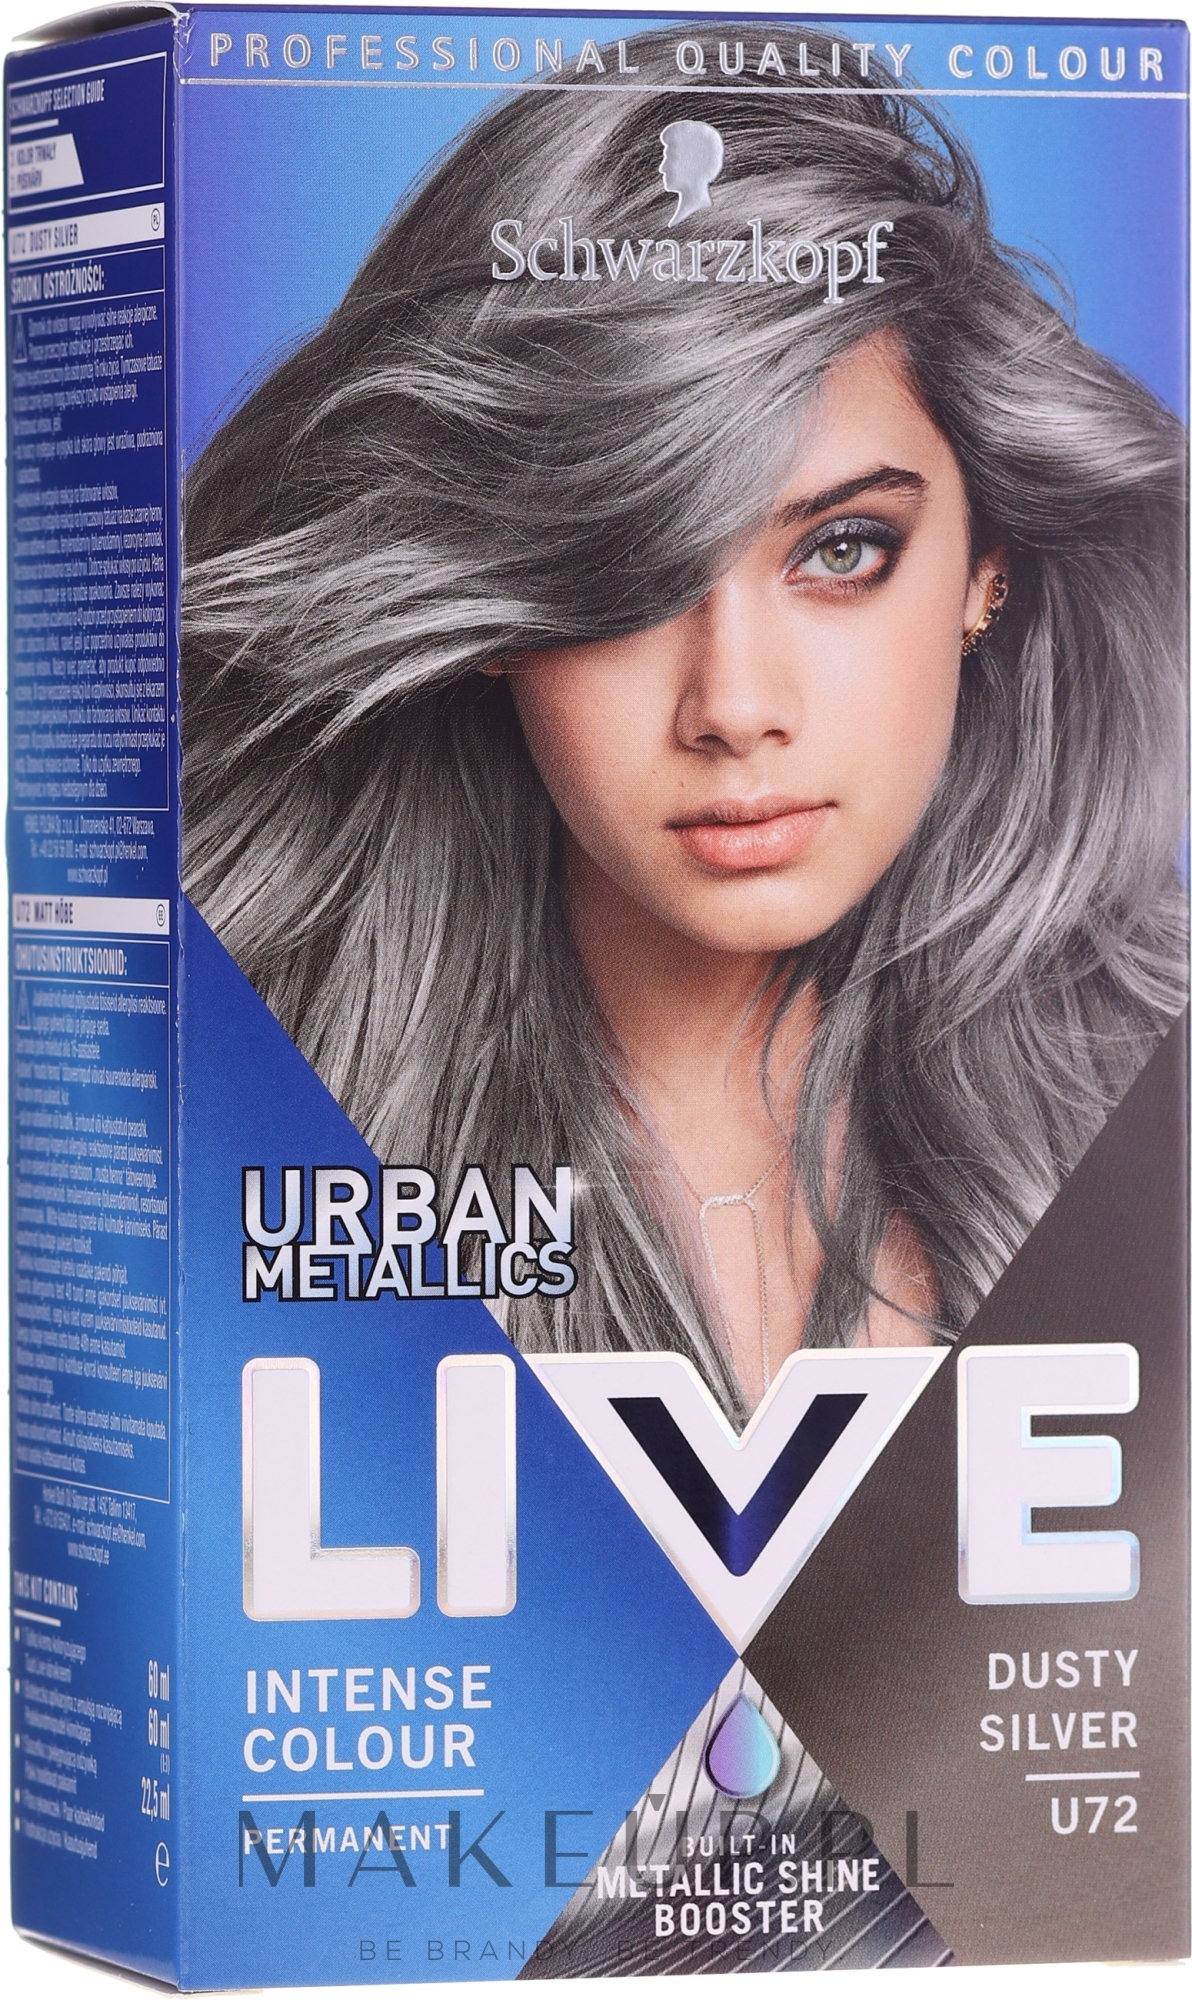 PRZECENA! Farba do włosów - Live Urban Metallics Intense Colour * — Zdjęcie U72 - Dusty Silver